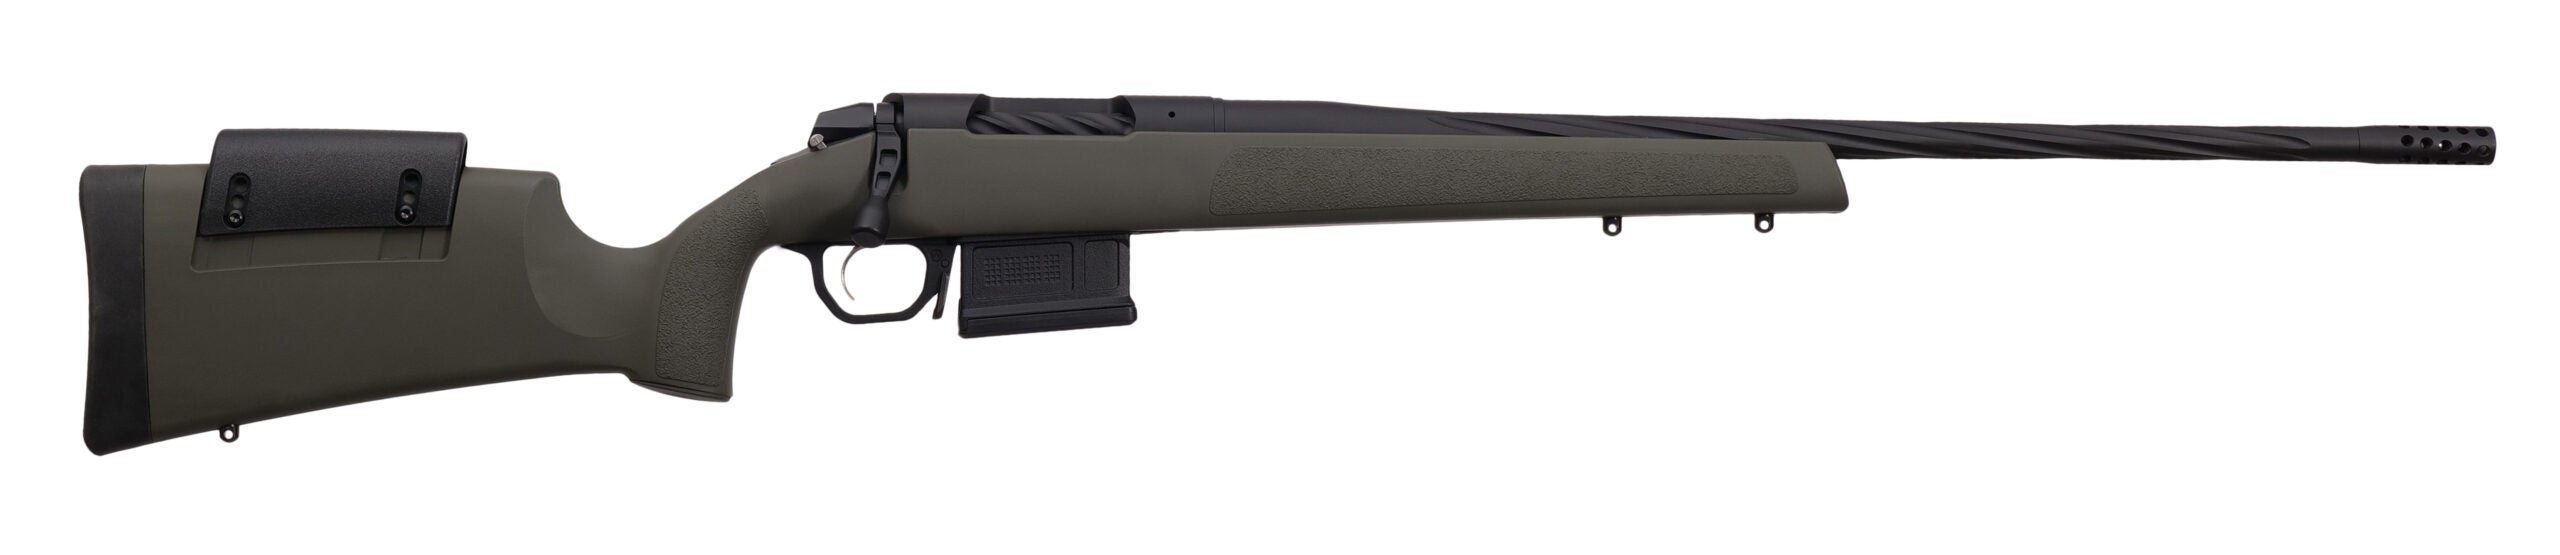 Weatherby Model 307 Range XP rifle on white background